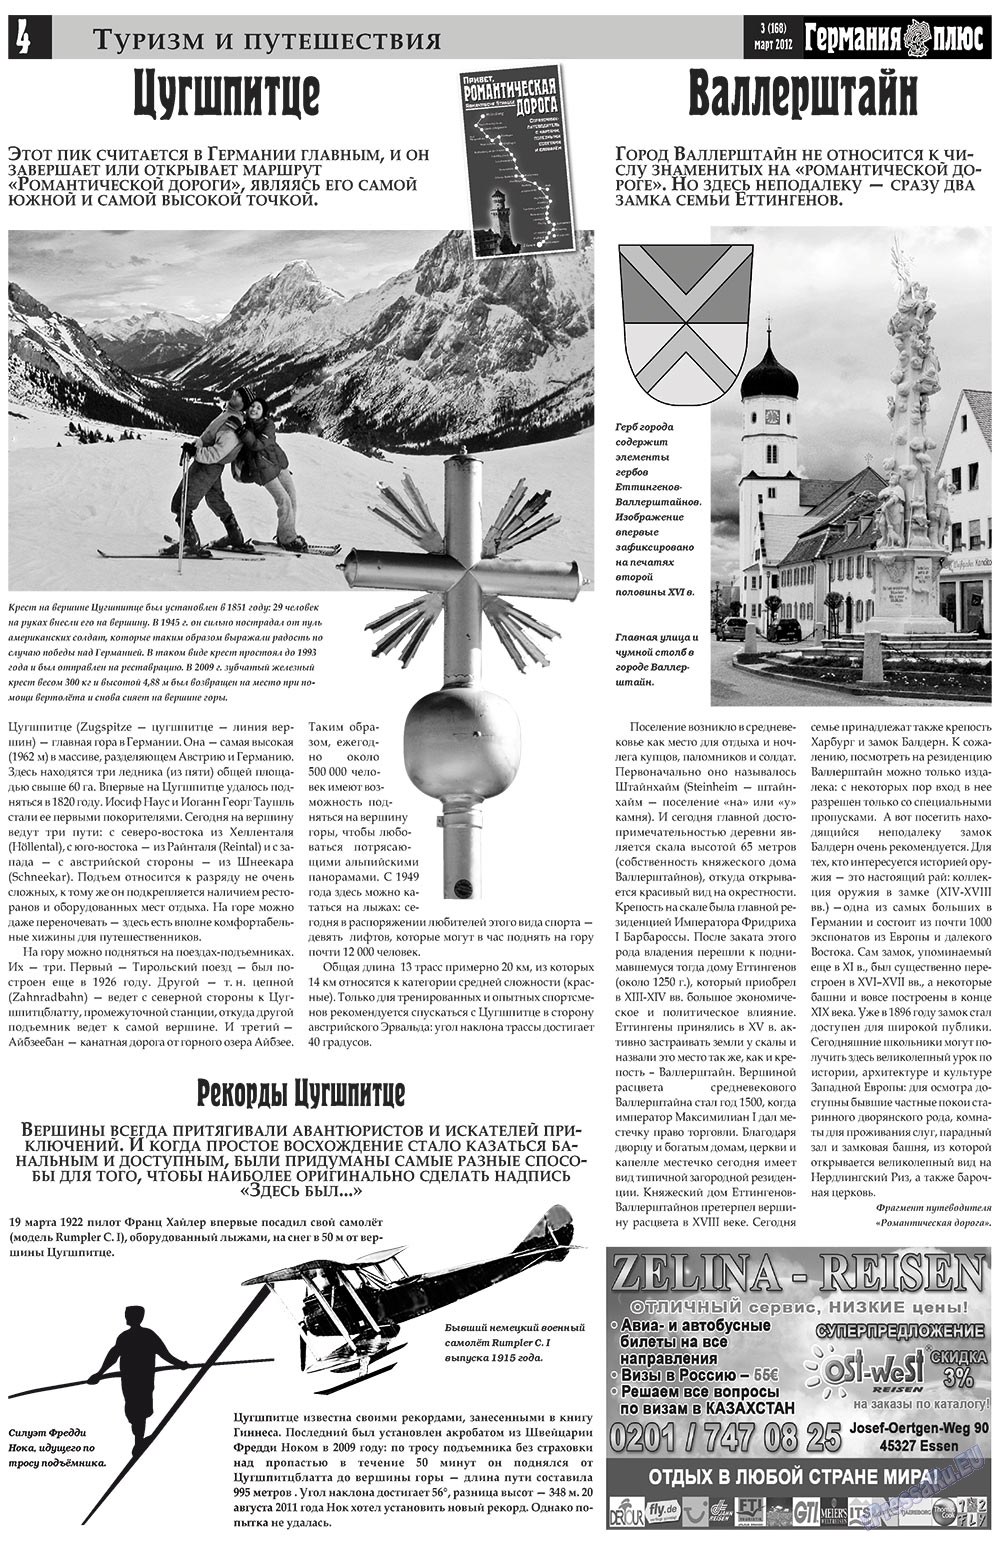 Германия плюс, газета. 2012 №3 стр.4